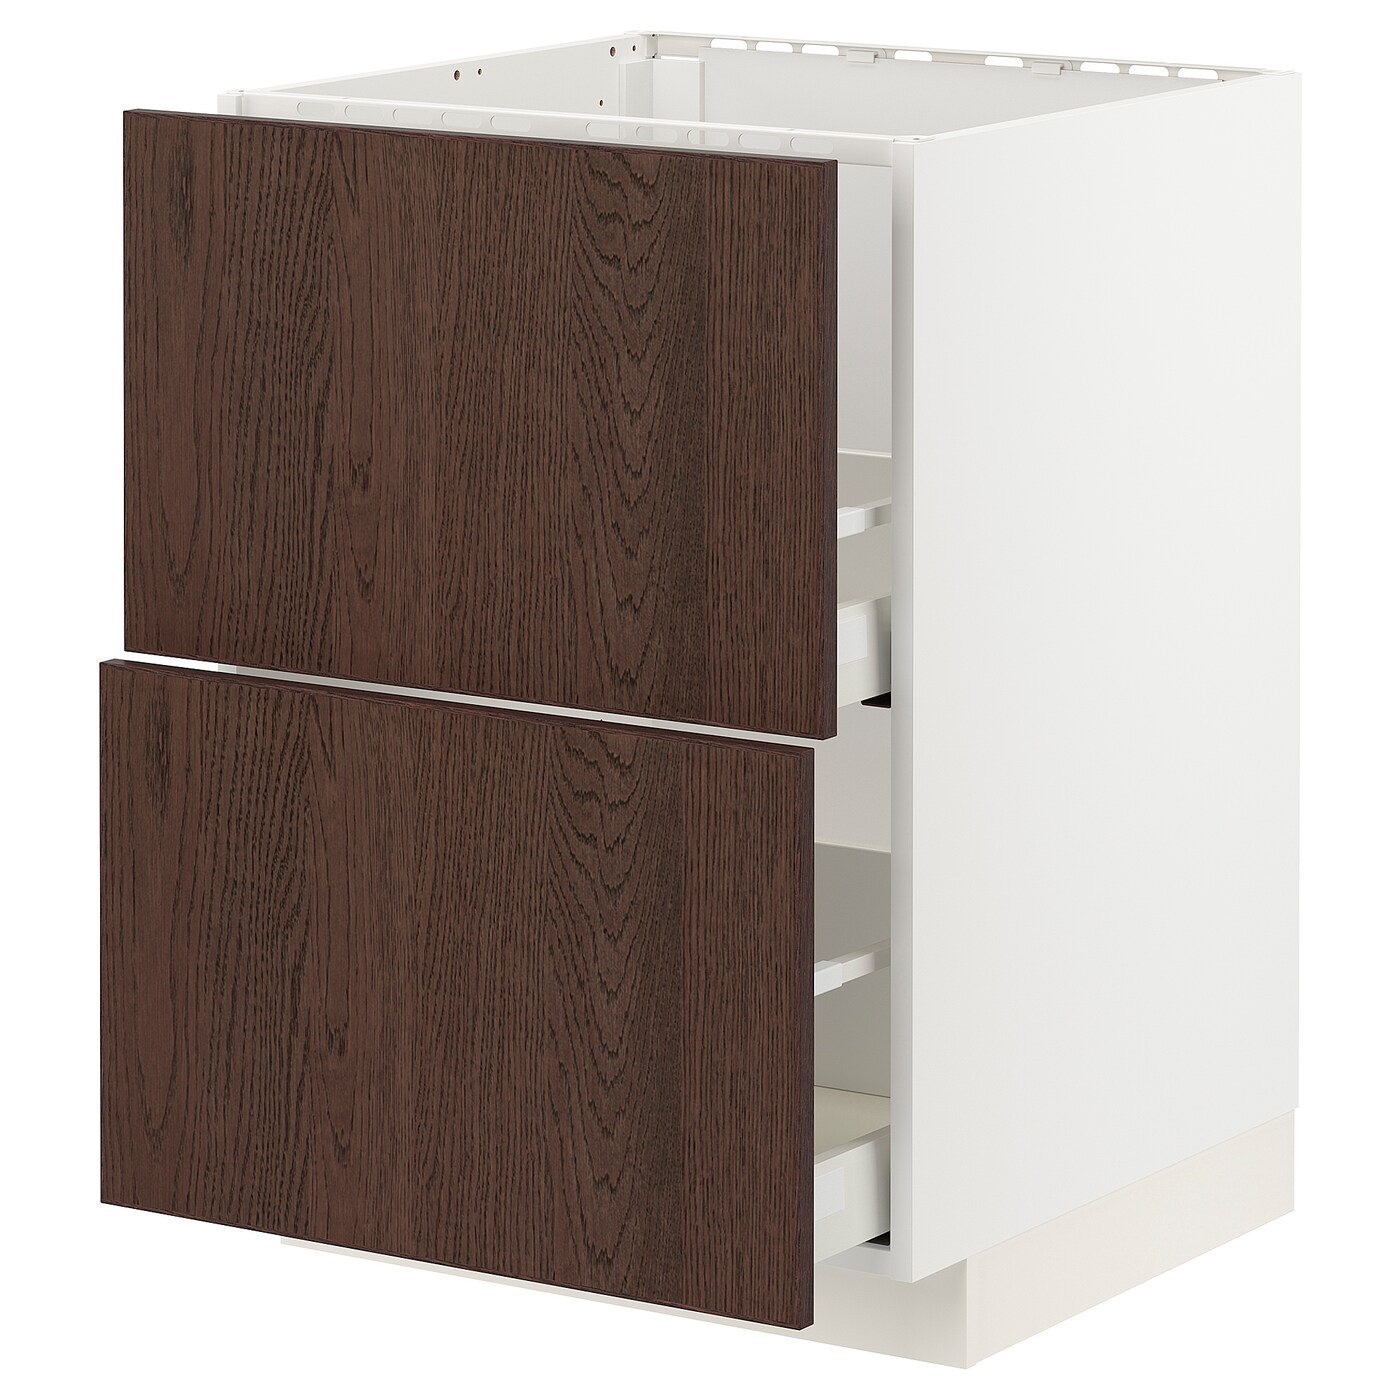 Напольный кухонный шкаф  - IKEA METOD MAXIMERA, 88x62x60см, белый/темно-коричневый, МЕТОД МАКСИМЕРА ИКЕА